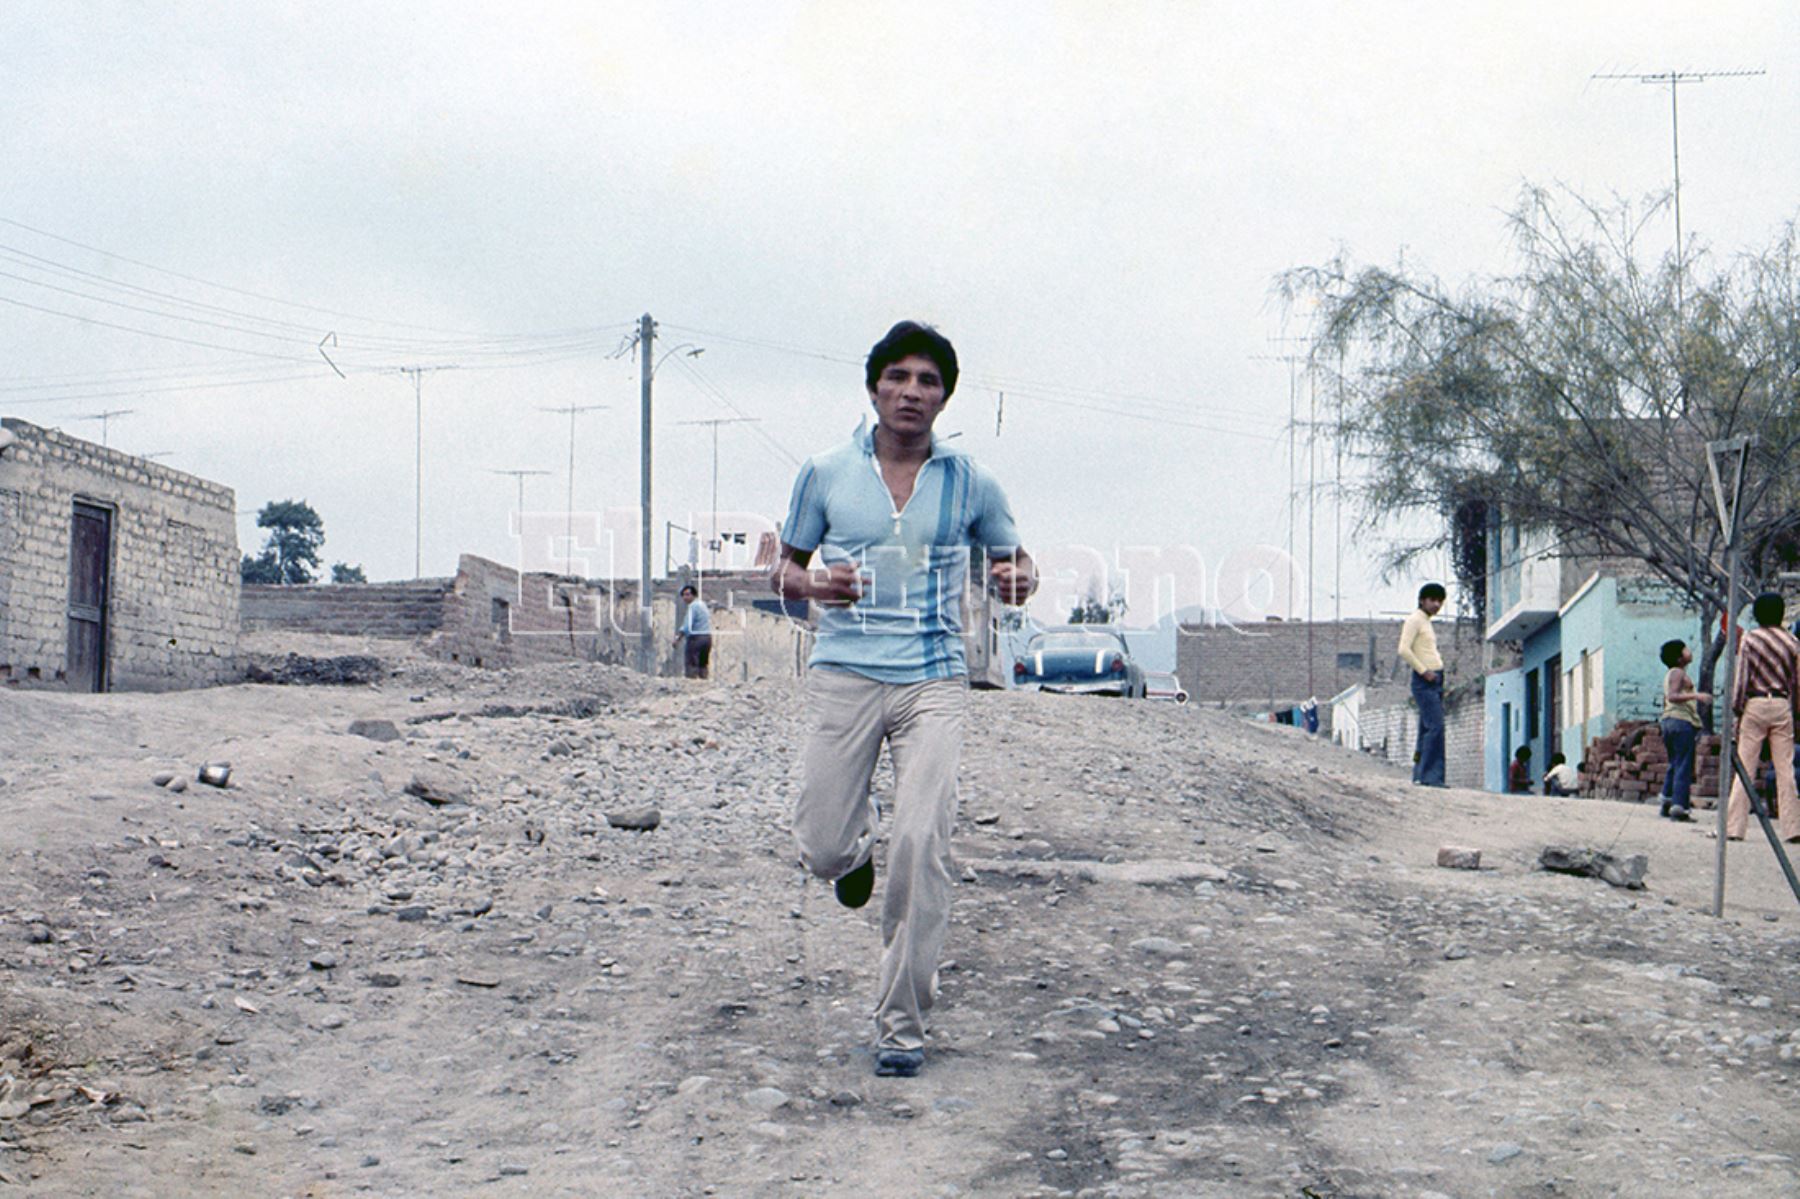 Huaral - 3 enero 1979 / El crédito nacional Fernando Rocco recorriendo en las calles de tierra querida.